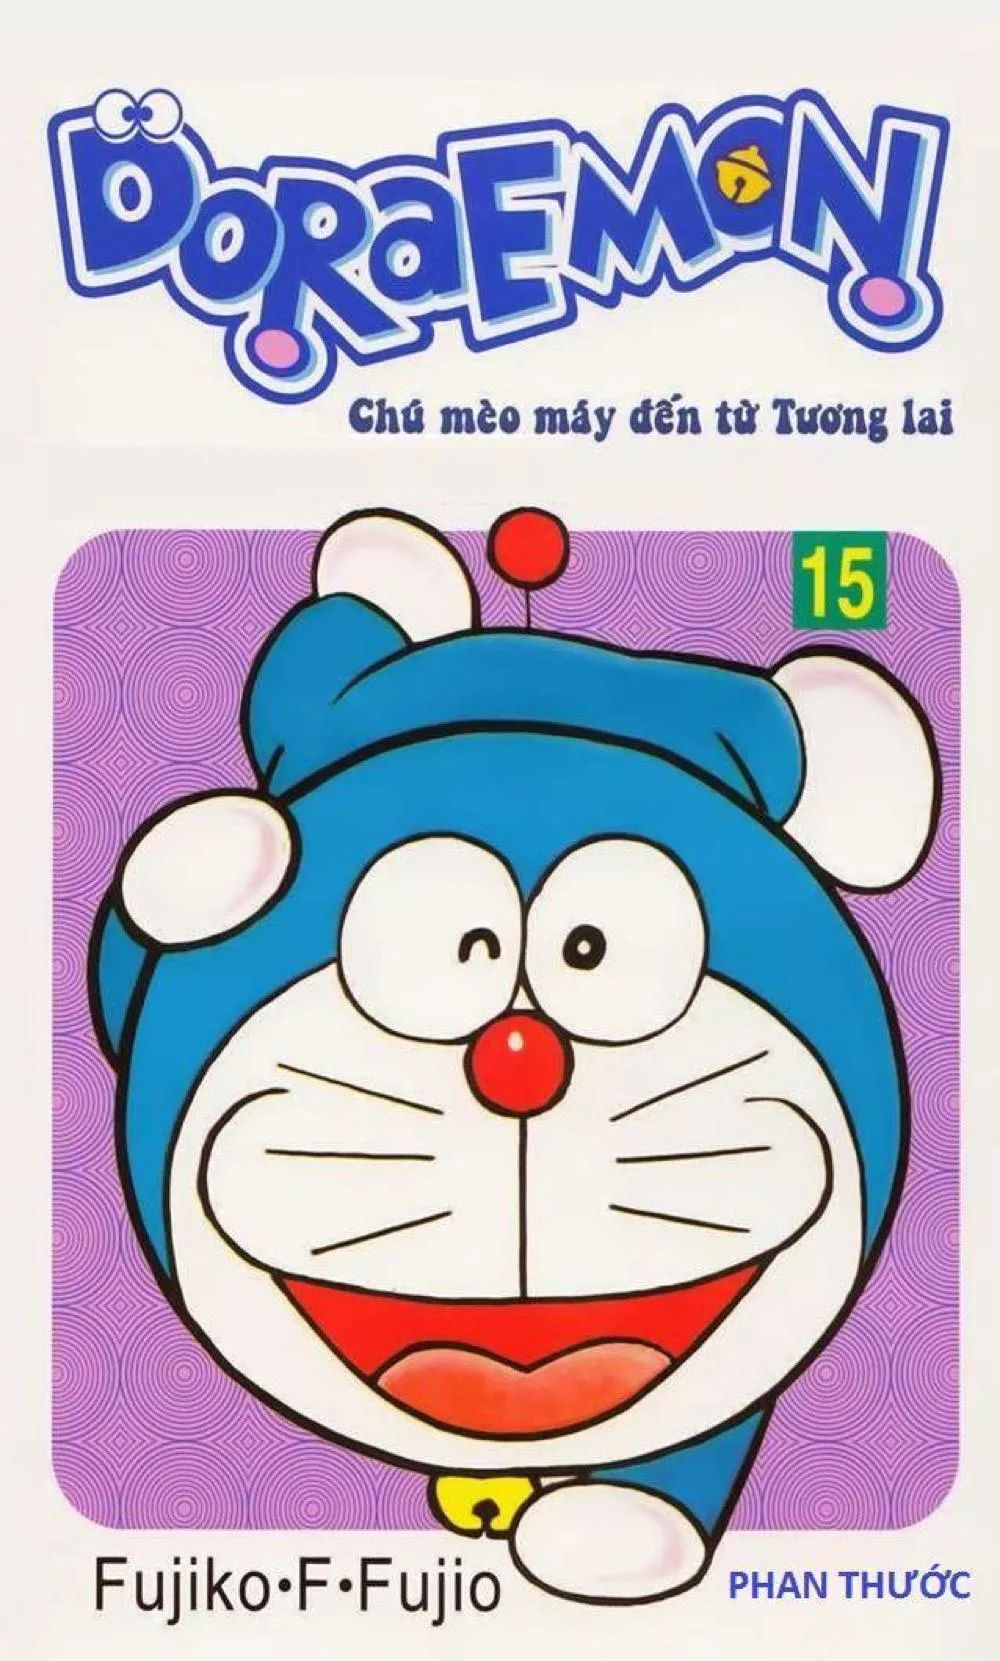 Doraemon Tập 15 | Mê Tải Sách - Doraemon comic book - Bạn là tín đồ của truyện tranh Doraemon? Hãy xem tập 15 với nhiều câu chuyện thú vị, hài hước và tình cảm. Bạn sẽ được đắm mình trong thế giới của Doraemon và những người bạn.